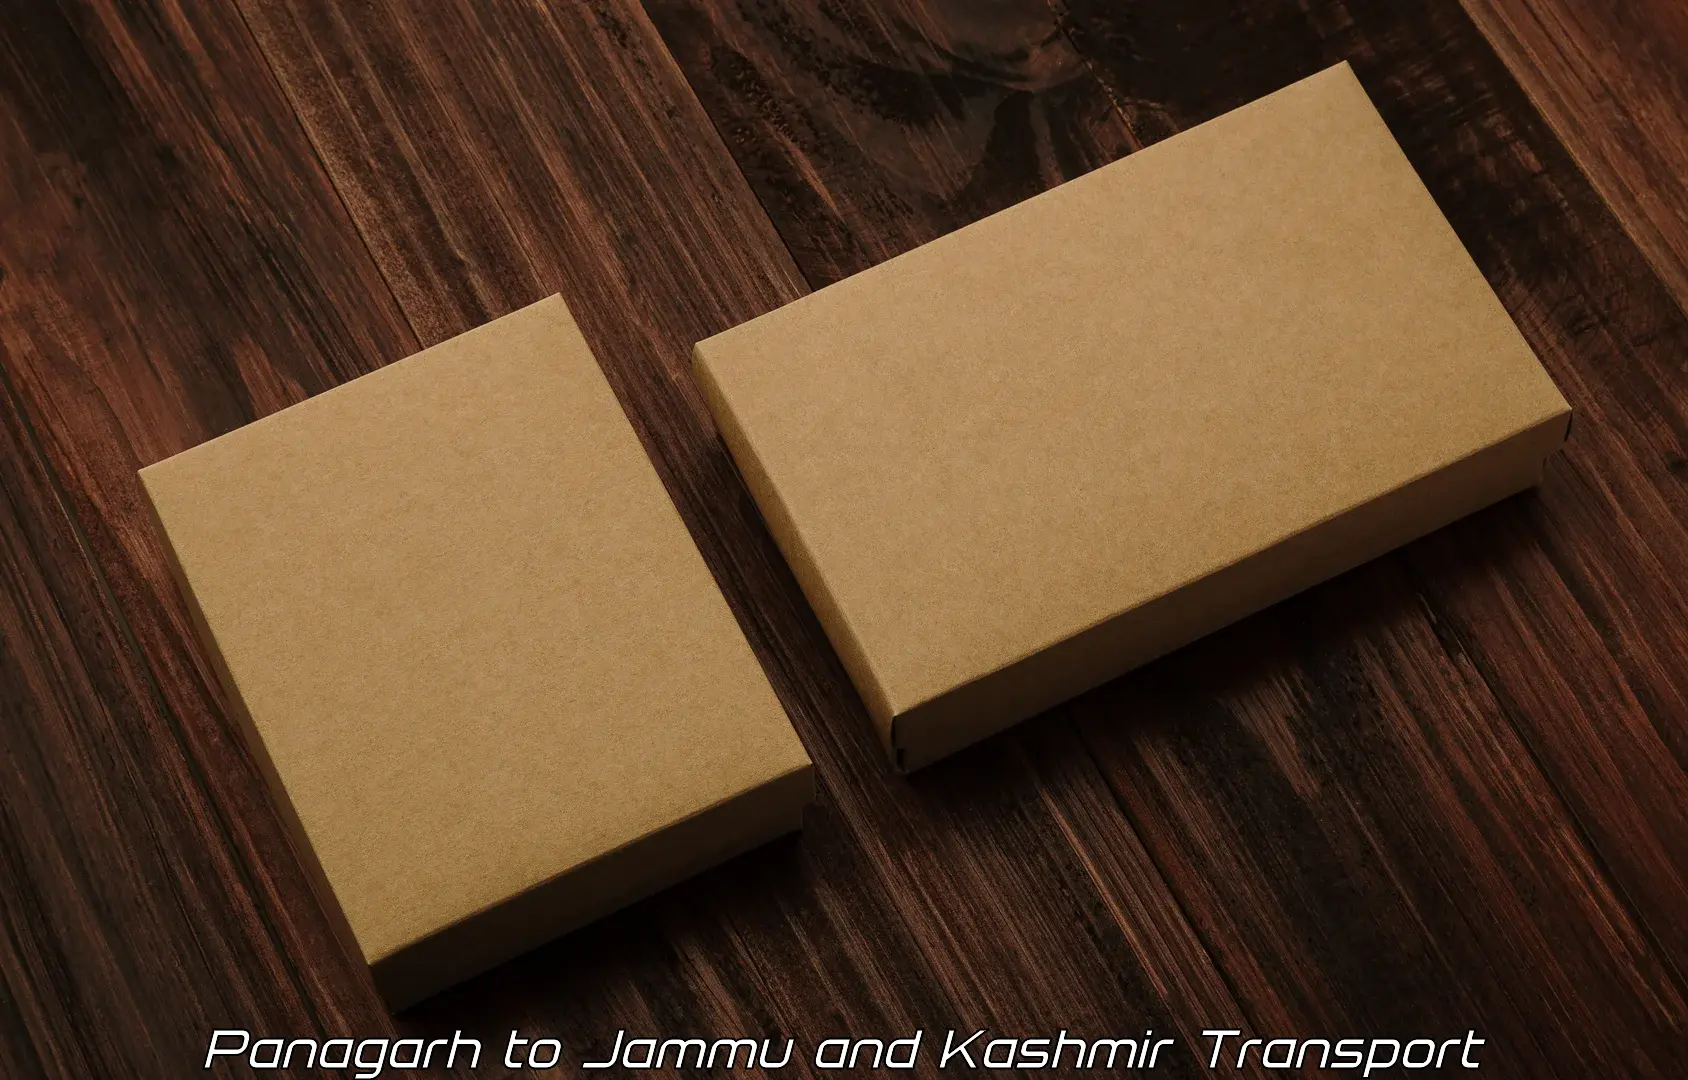 Shipping partner Panagarh to Kargil